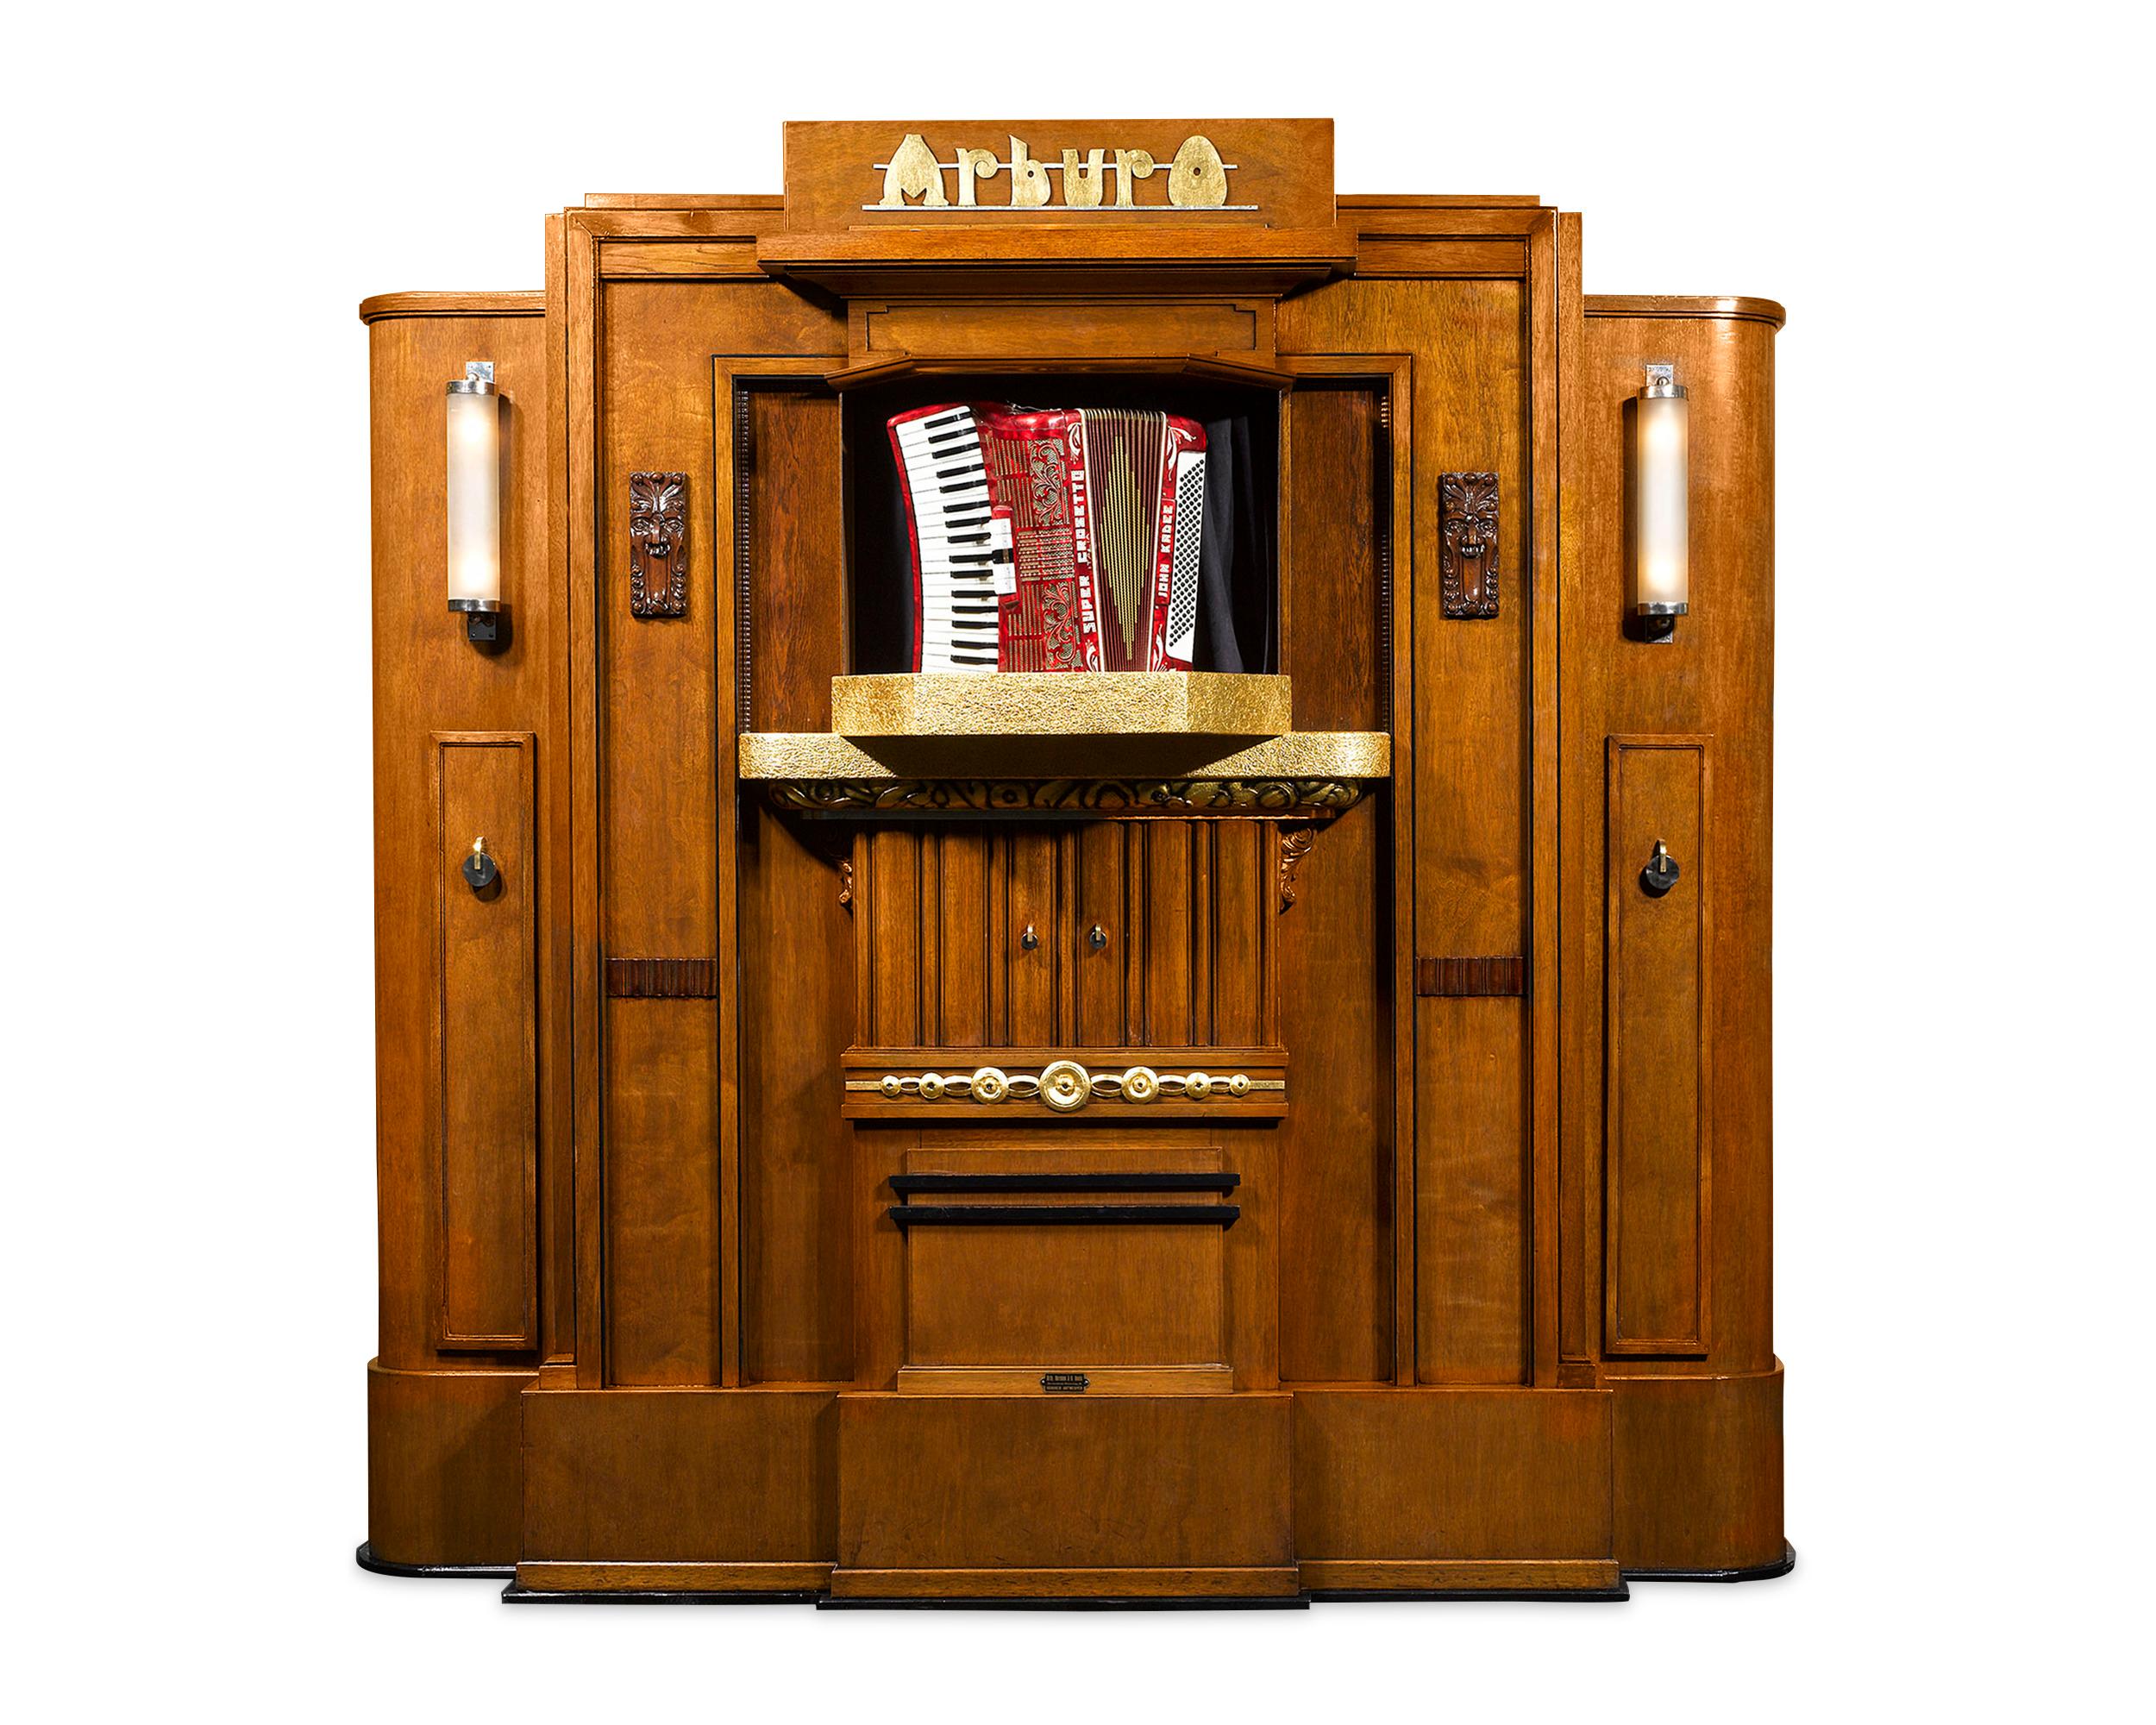 Cet orgue Orchestrion précoce, incroyablement rare, est un chef-d'œuvre de la musique automatisée. Il était autrefois installé dans les salles de danse, les cafés et les fêtes foraines de Belgique et des Pays-Bas au début et au milieu du XXe siècle.